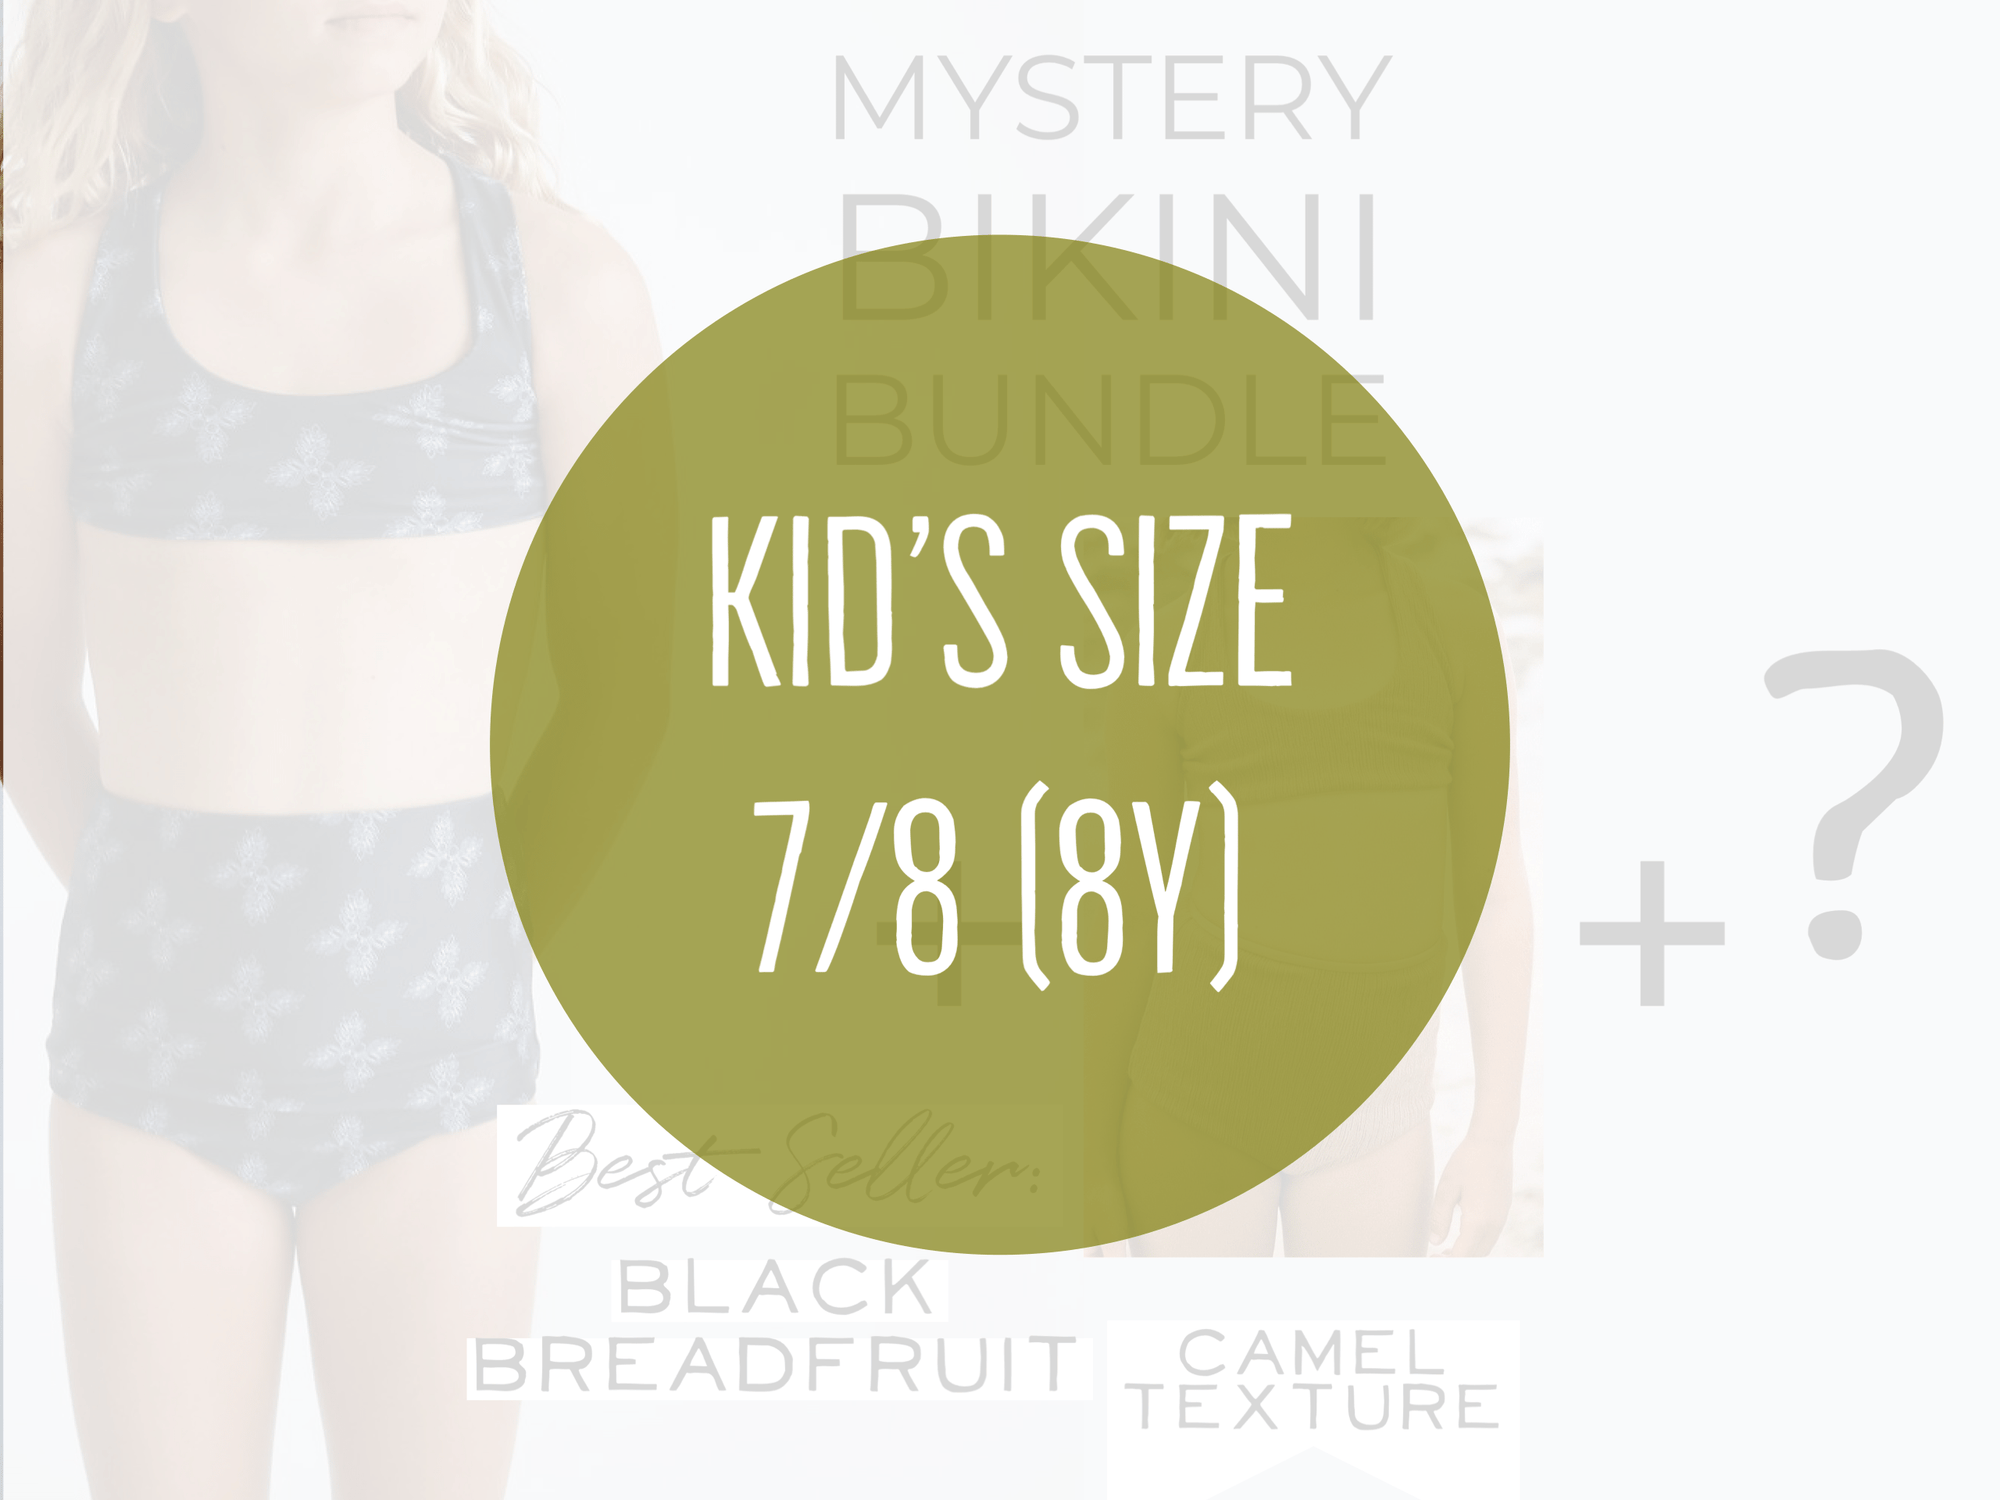 Size 7/8 Girl's Mystery Bundle- Best Seller Bikini in Black Breadfruit